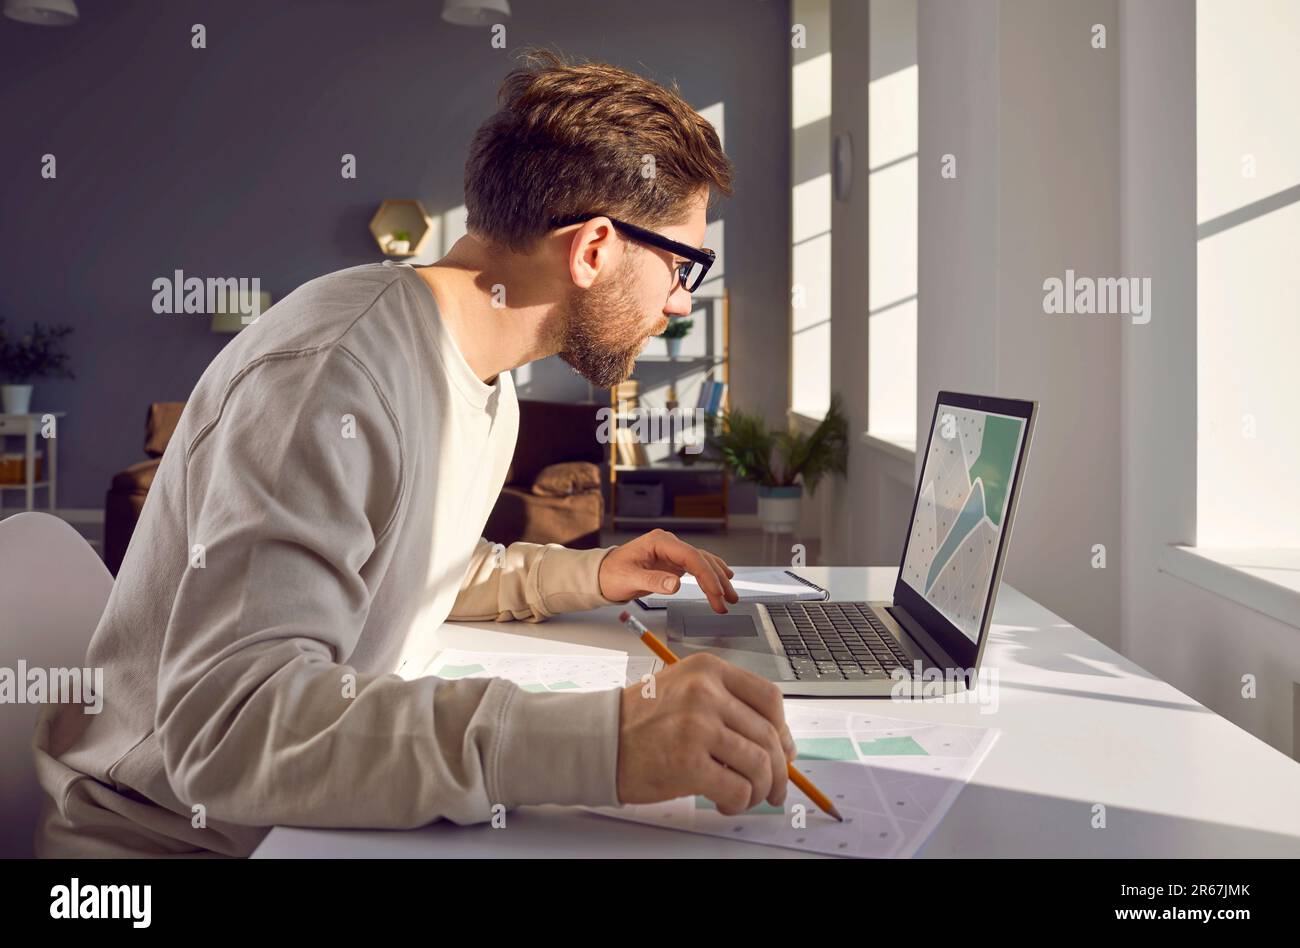 Mann, der seinen Laptop benutzt, während er mit digitalen und papierbasierten Stadtplänen arbeitet Stockfoto